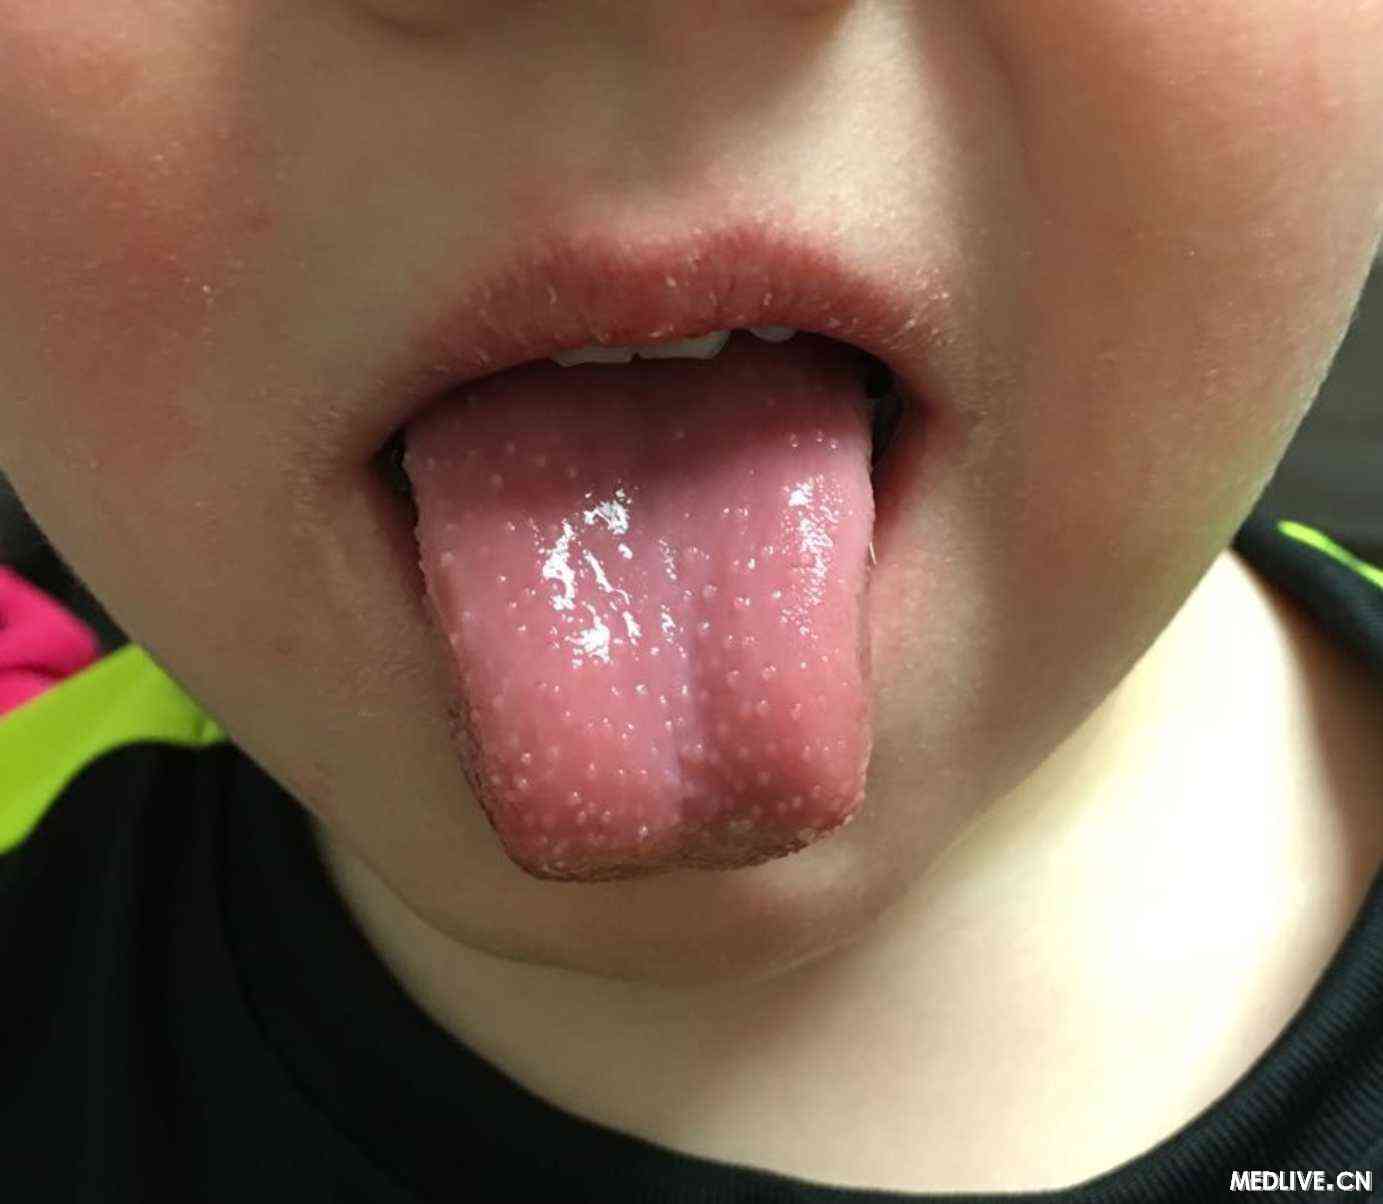 患者,发烧,裂痕唇,脸上有干疹,舌头呈现出如图所示额症状,可能的诊断